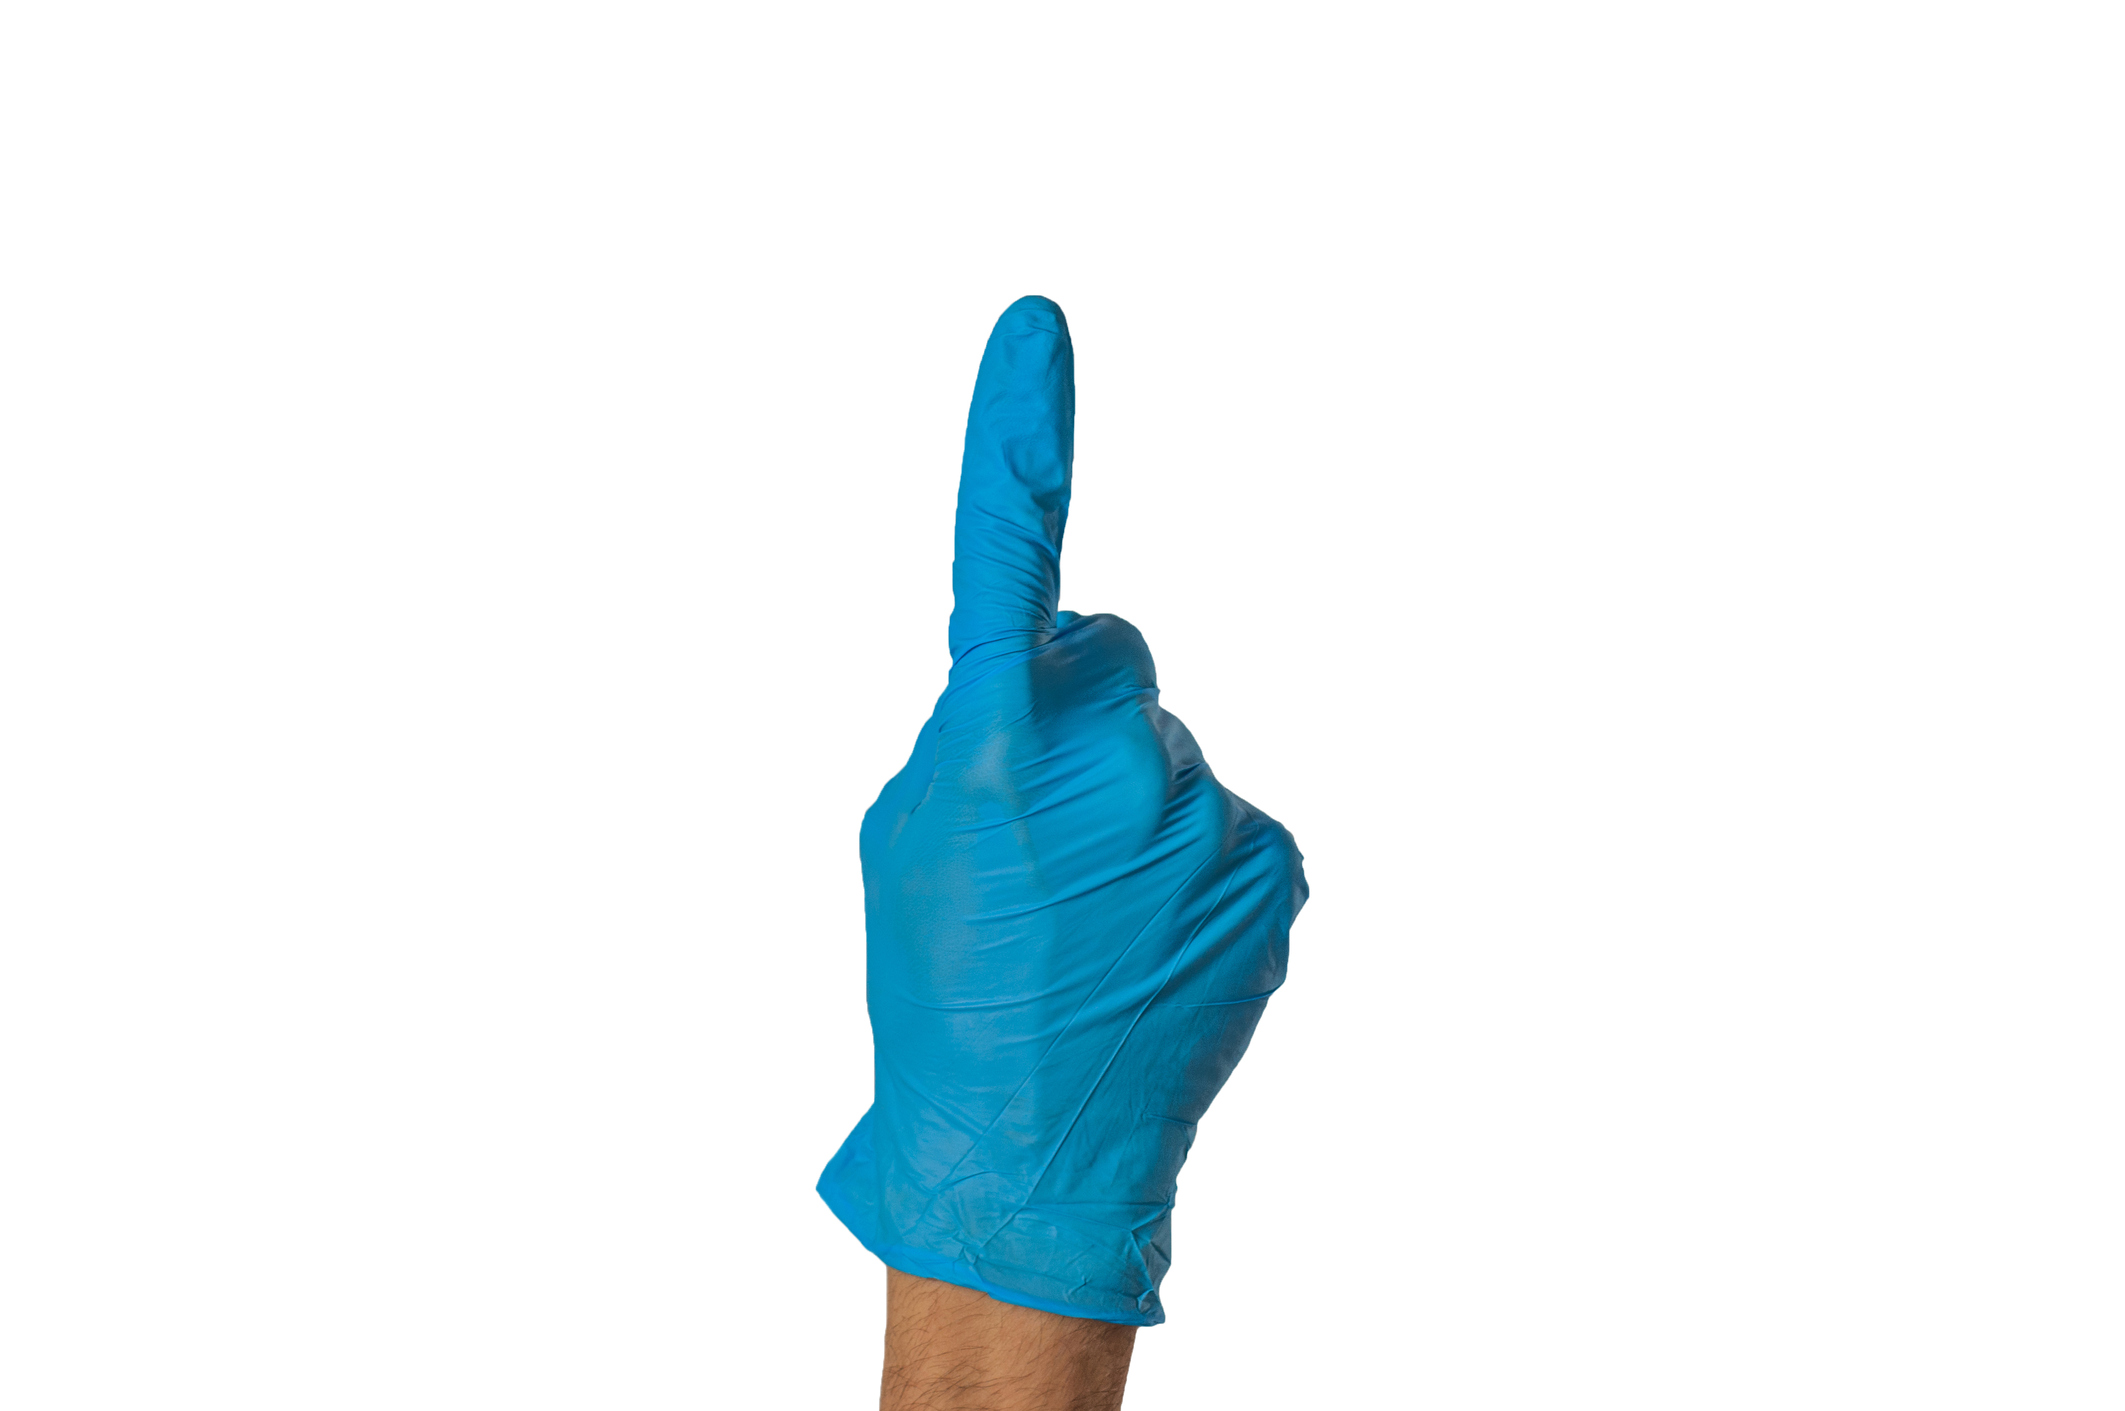 Finger prostata Prostate